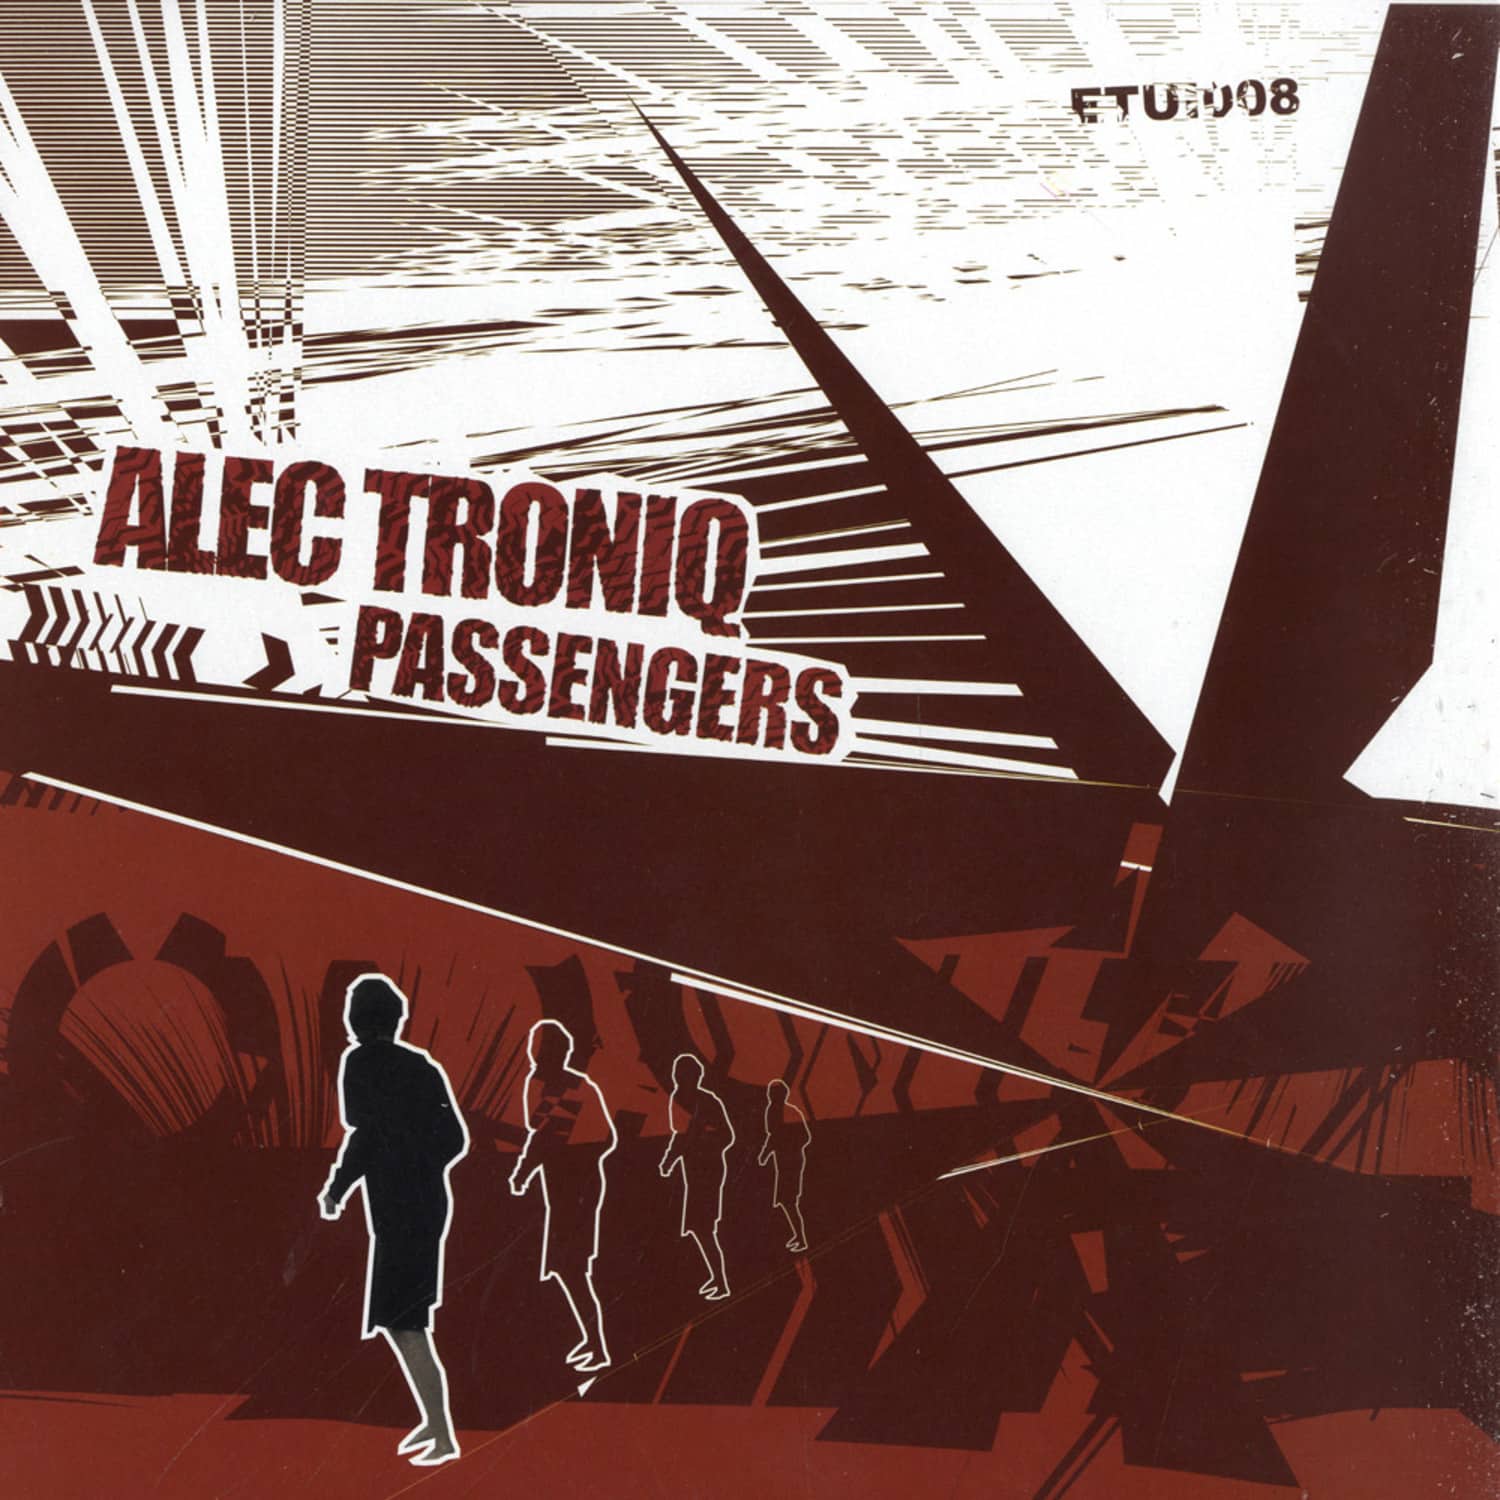 Alec Troniq - PASSENGERS